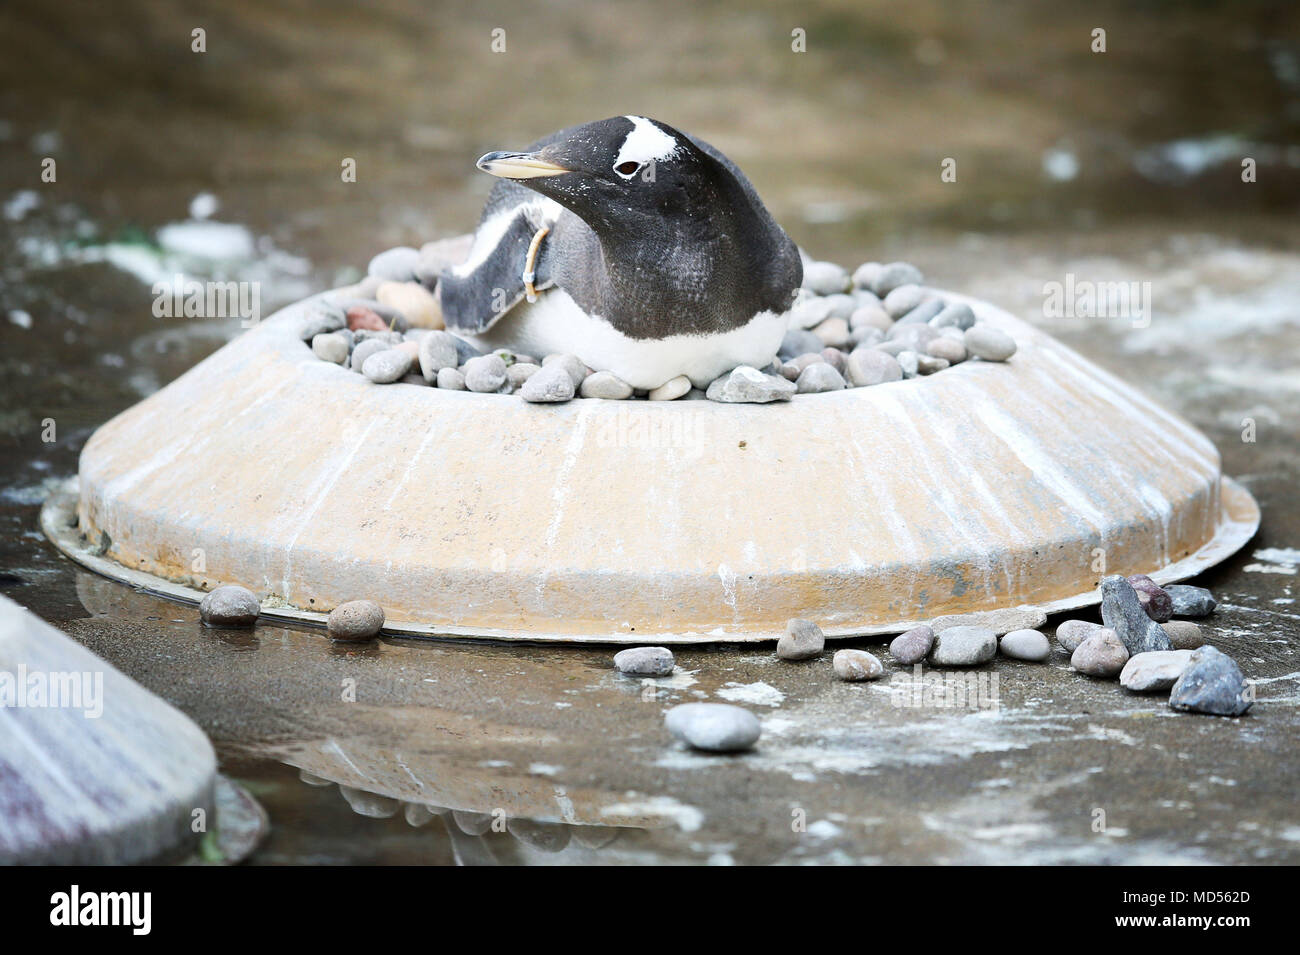 Gentoo's Edinburgh Zoo Pinguine beginnen ihre Balz wird angezeigt, und die Frauen sitzen auf Verschachtelung Ringe, die Männchen durch Kiesel auf der Suche nach den angenehmsten zu Ihrem gewählten Mate präsentieren zu sichten. Stockfoto